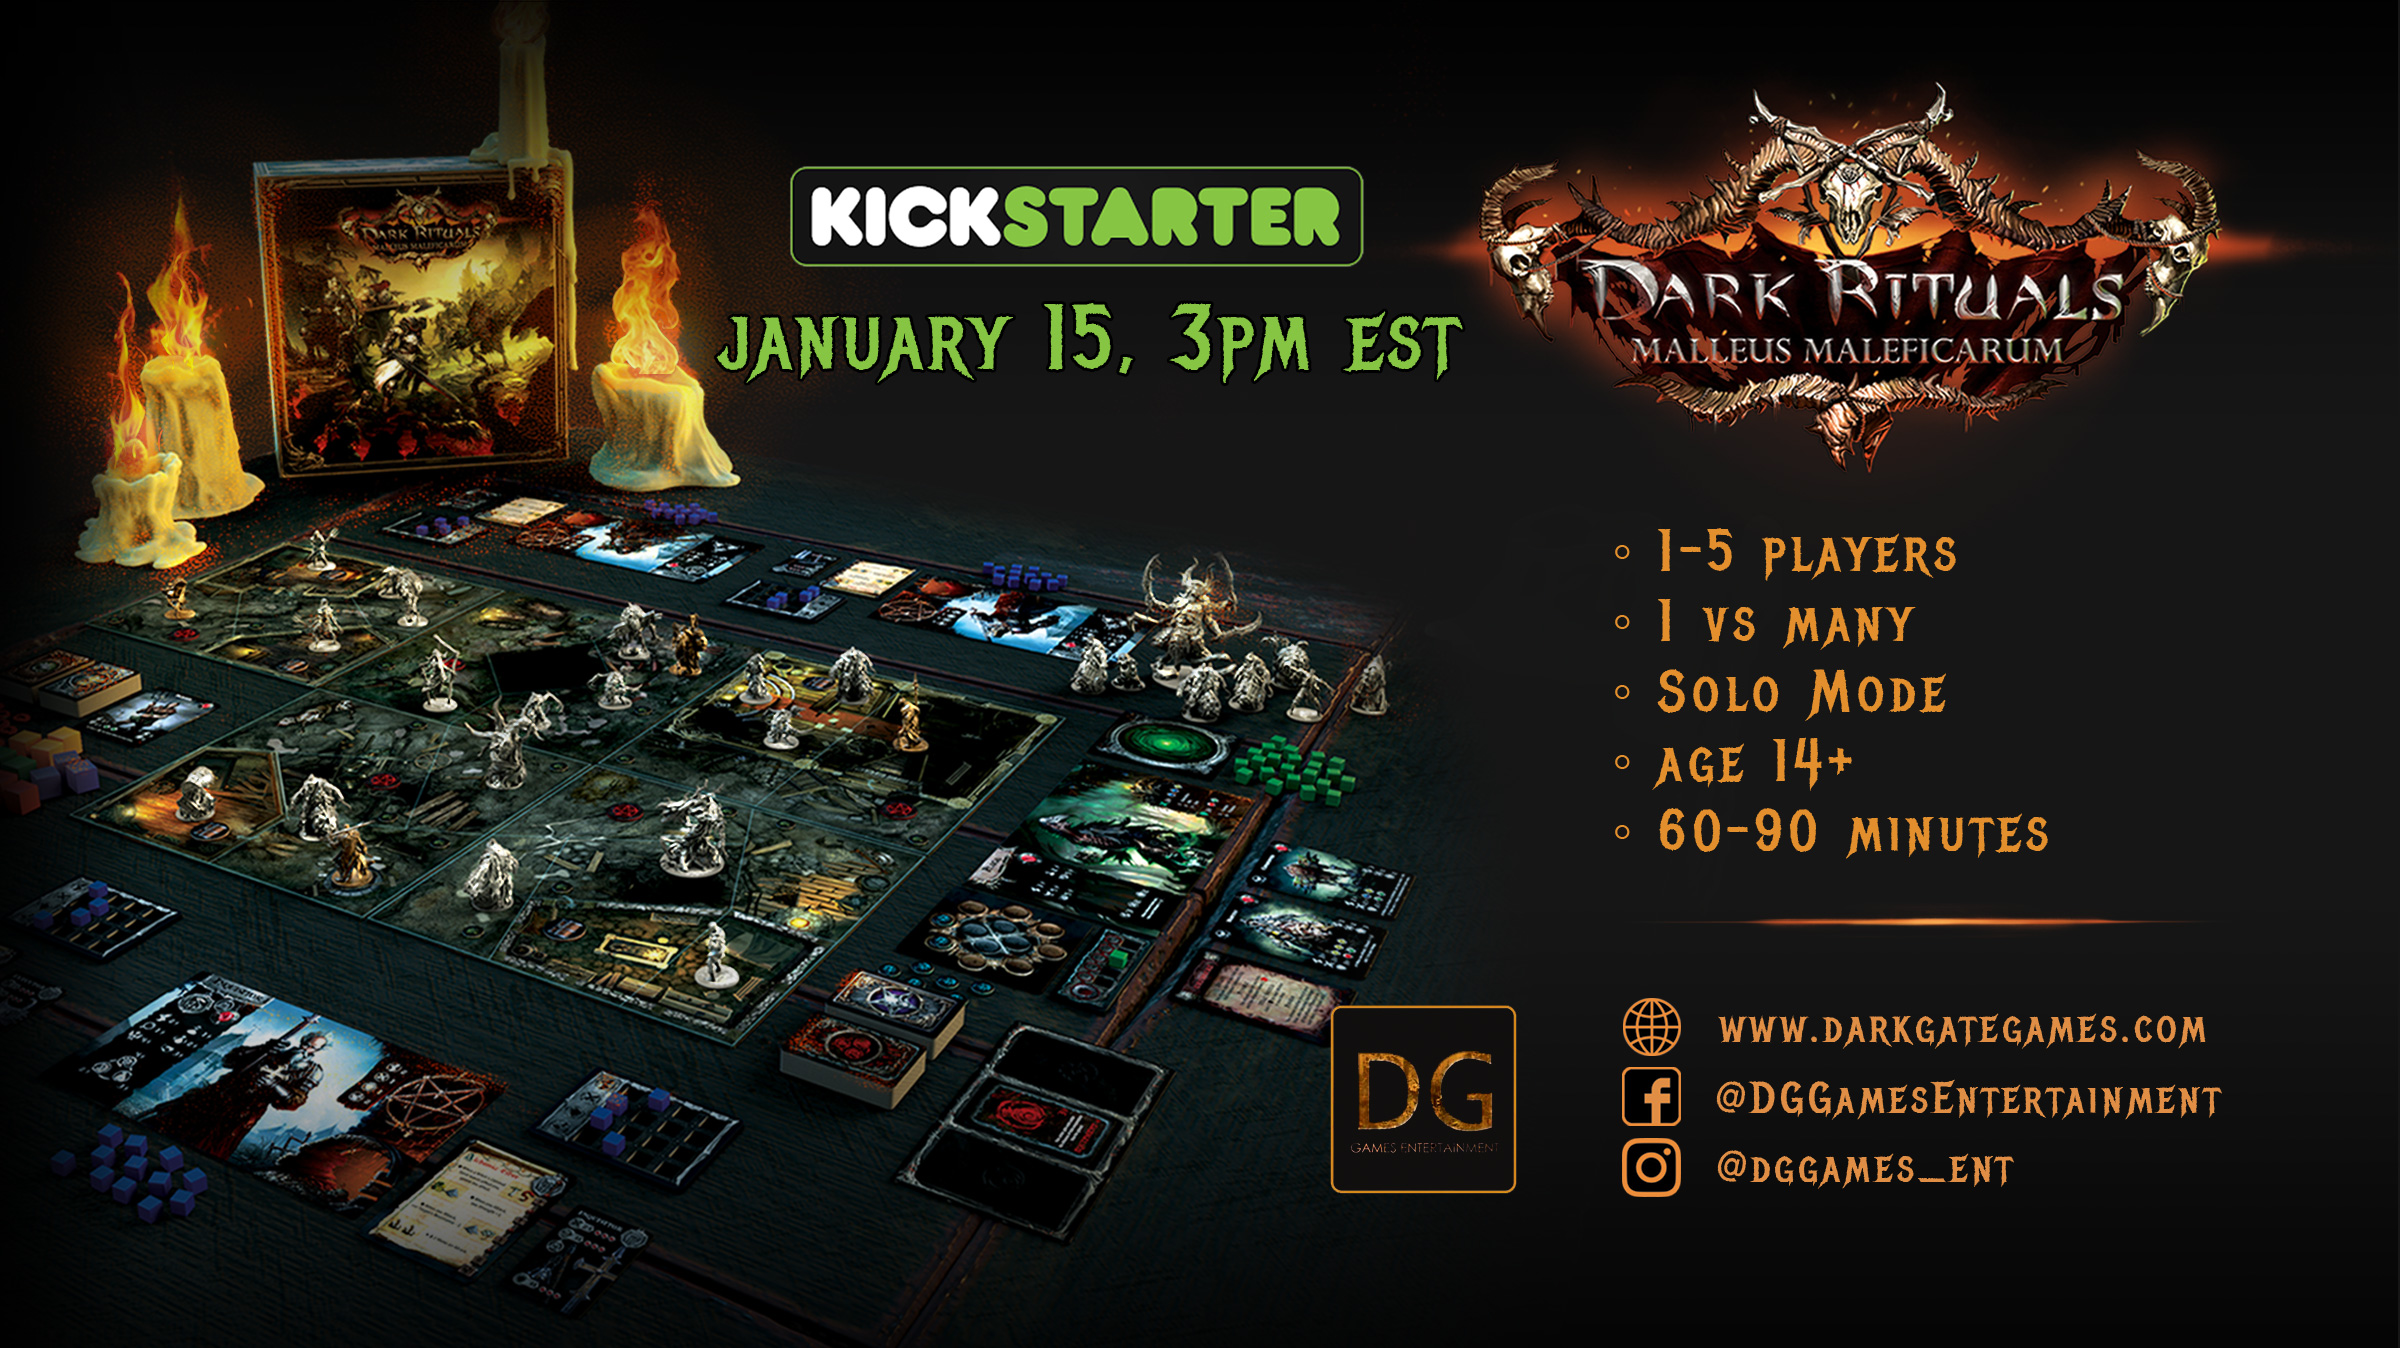 Dark Rituals launches on Kickstarter on January 15